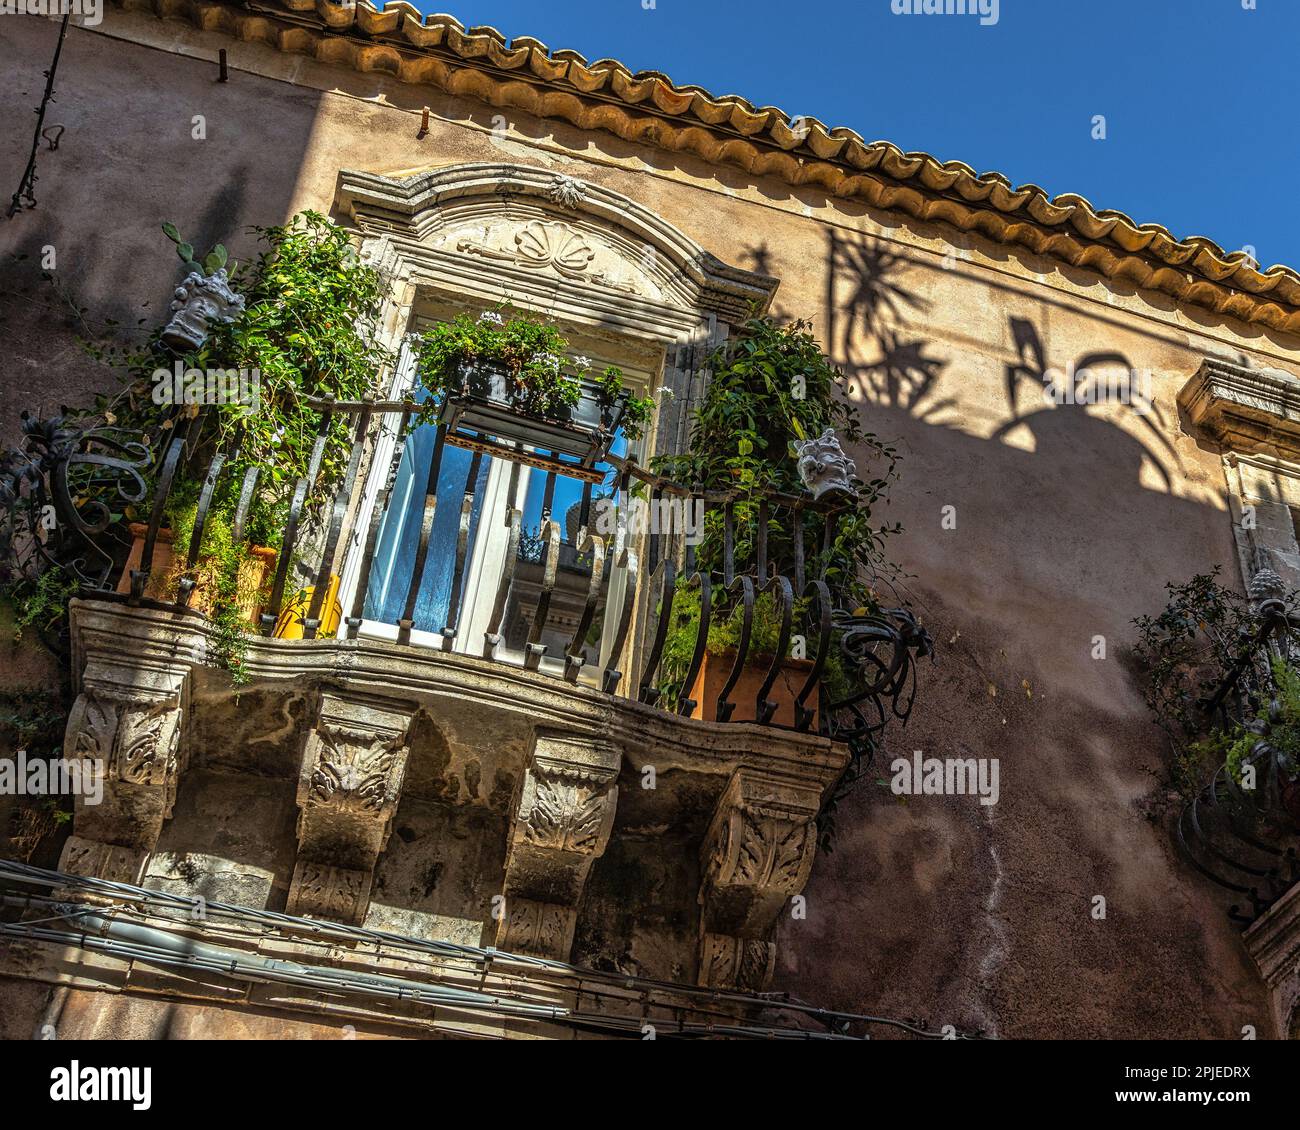 Les balcons caractéristiques avec des décorations baroques donnent sur les ruelles étroites de l'île d'Ortigia. Syracuse, Sicile, Italie, Europe Banque D'Images